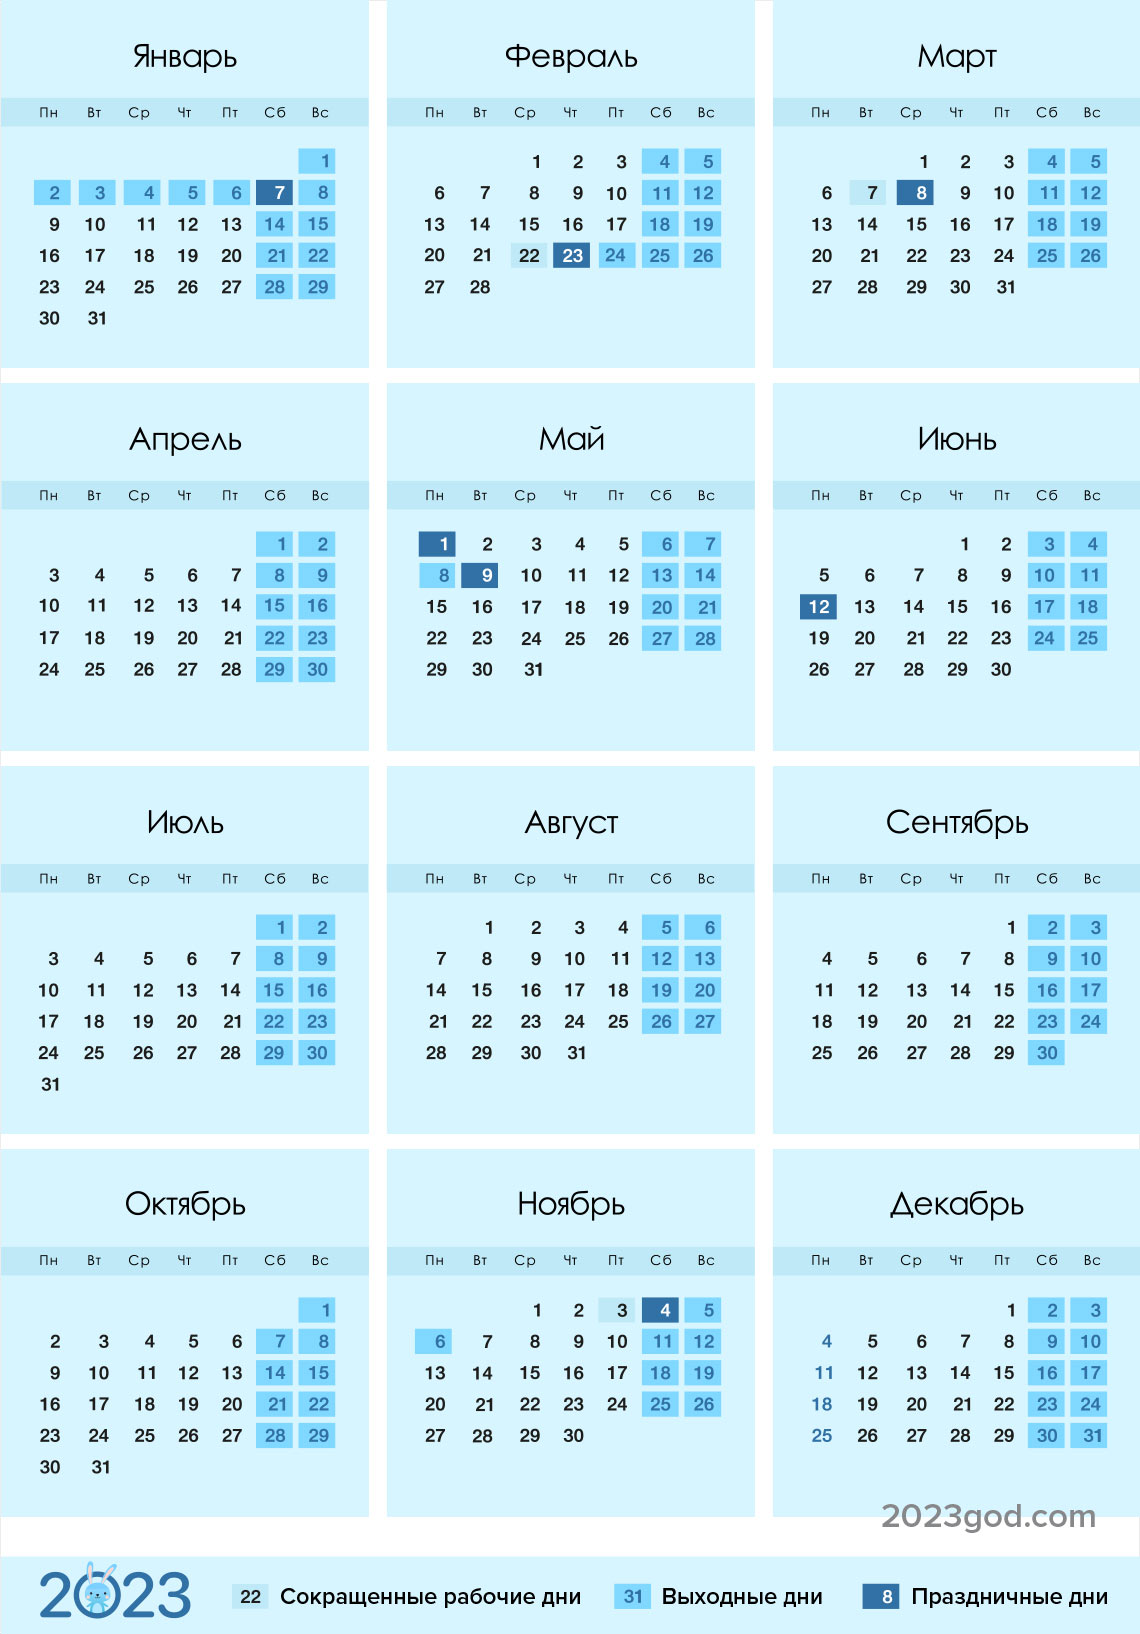 Производственный календарь на 2023 год | утвержденный, с праздниками и  выходными, скачать